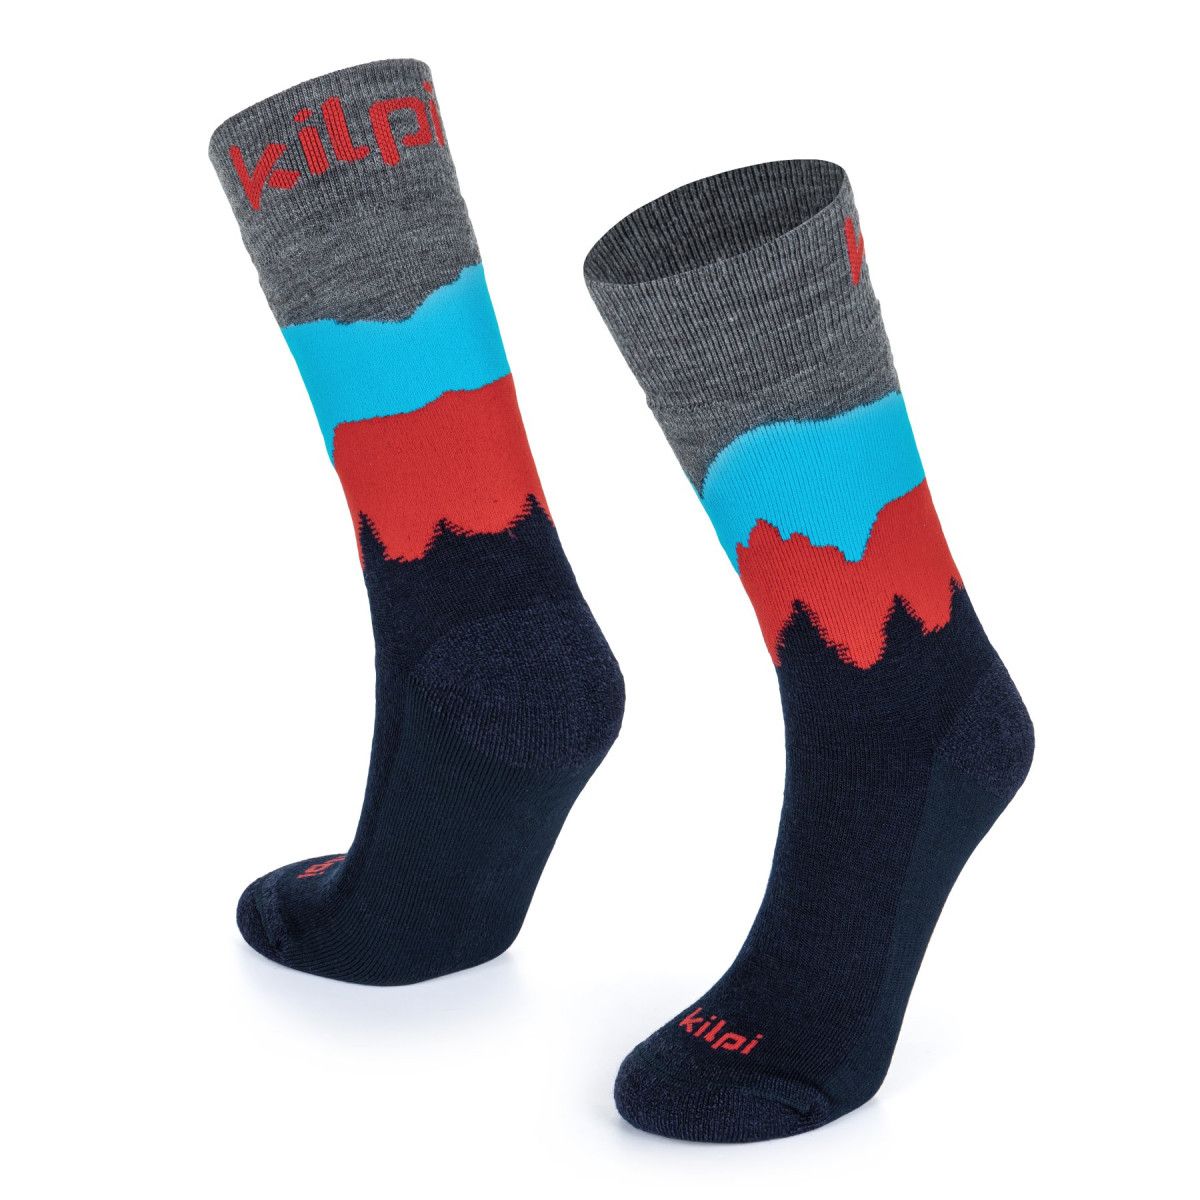 Unisex ponožky z merino vlny Kilpi NORS-U černé 39-42